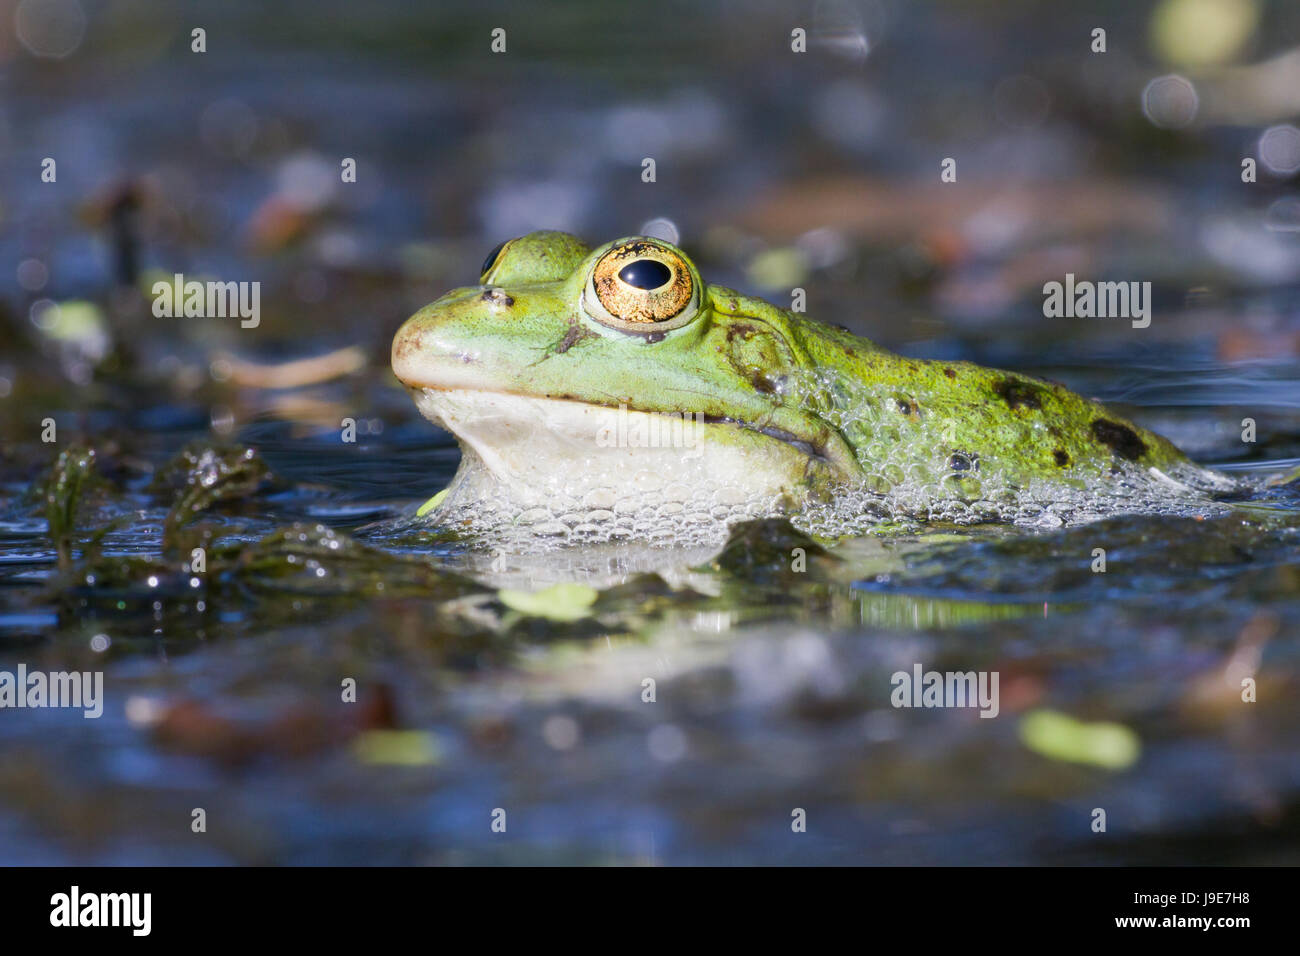 Amphibien, Augen, Amphibien, Frosch, frontal, Amphibien, Augen, Amphibien  Stockfotografie - Alamy